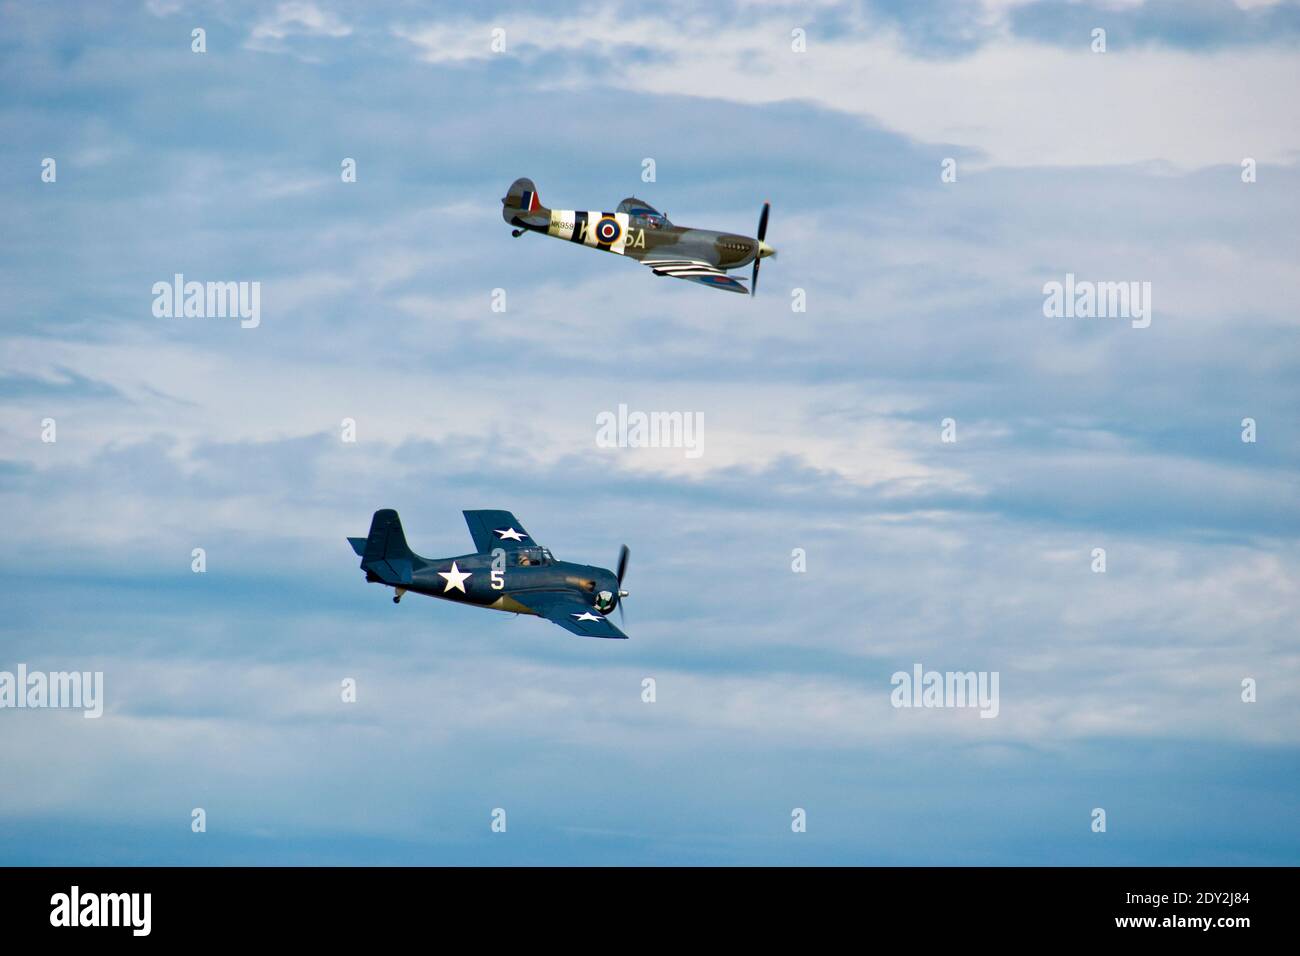 Un Supermarine Spitfire e un Grumman Wildcat, aerei da combattimento della seconda guerra mondiale, sorvolano l'aeroporto di Oshkosh, Wisconsin. Fotografato da proprietà pubblica Foto Stock